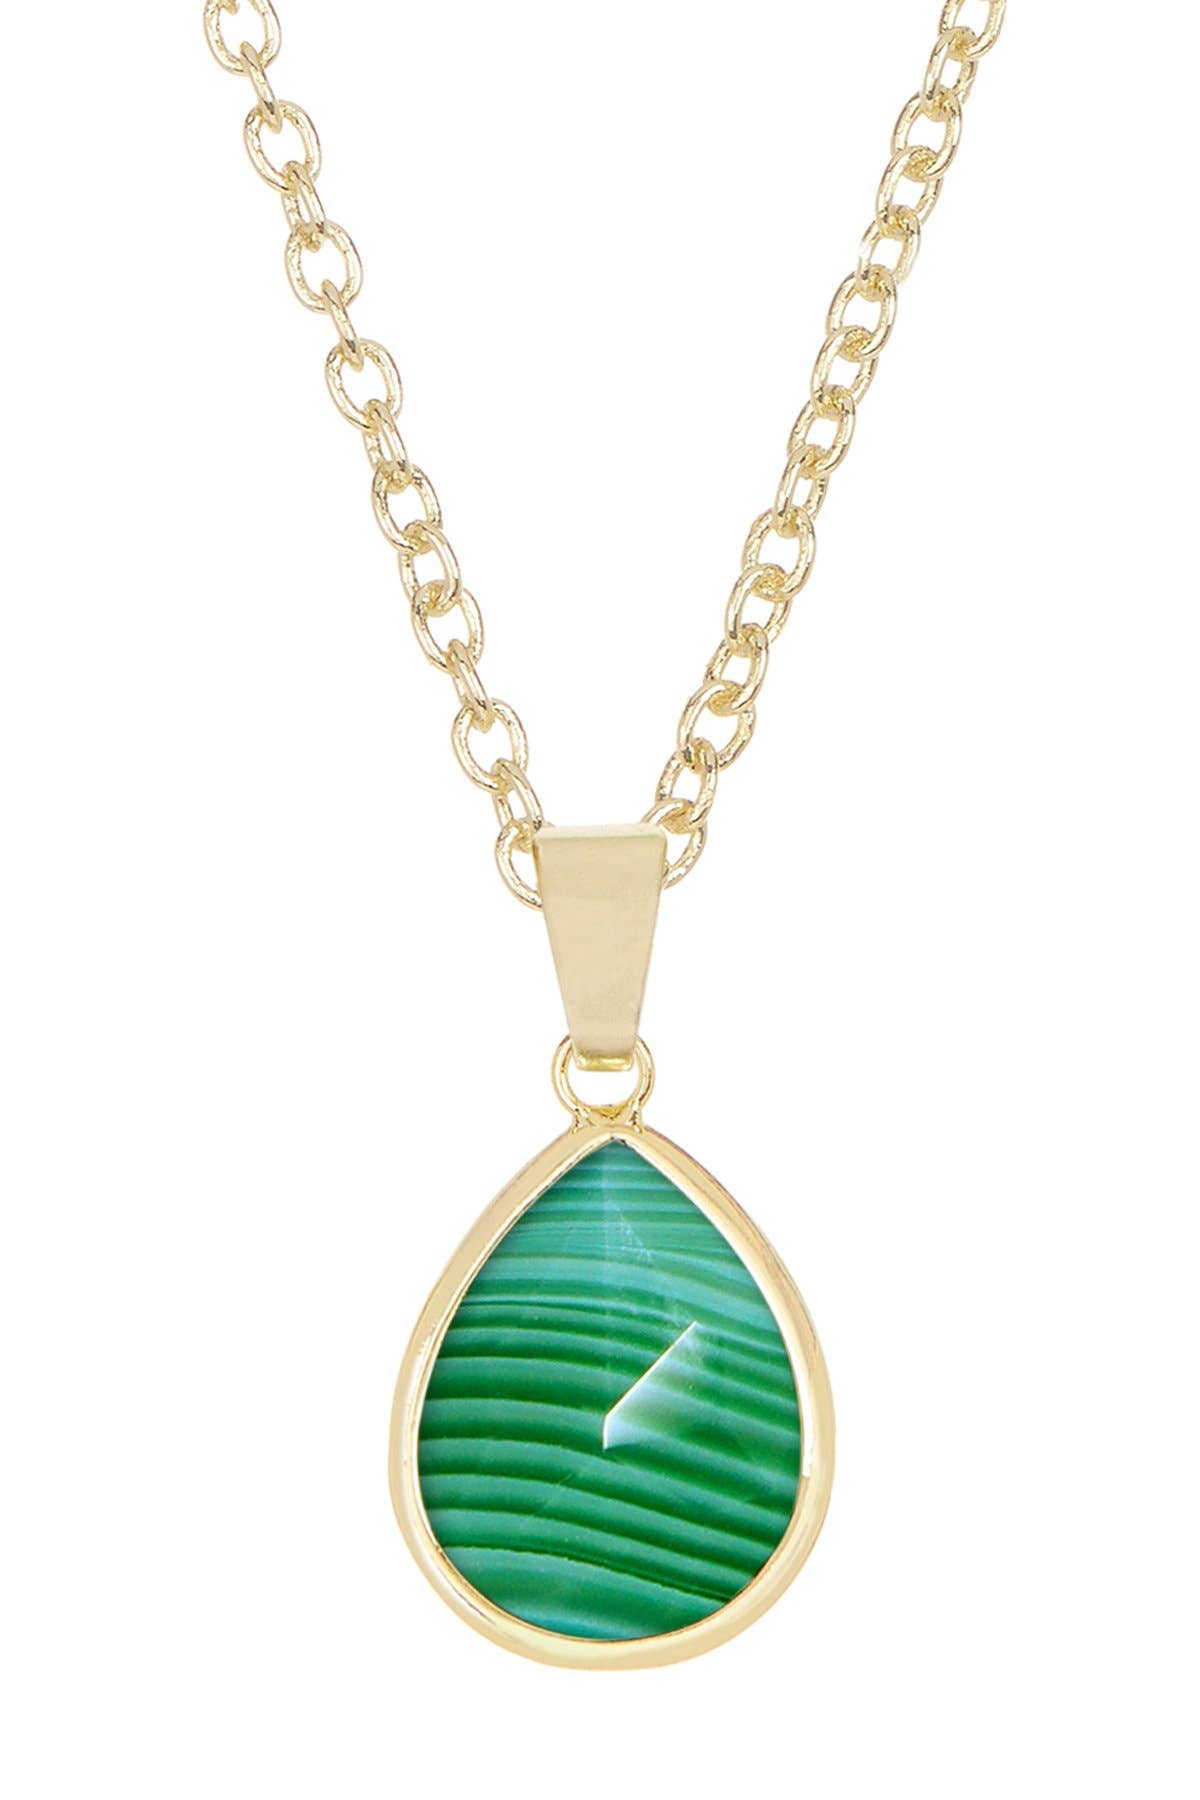 14k Vermeil & Green Lace Agate Pendant Necklace - VM